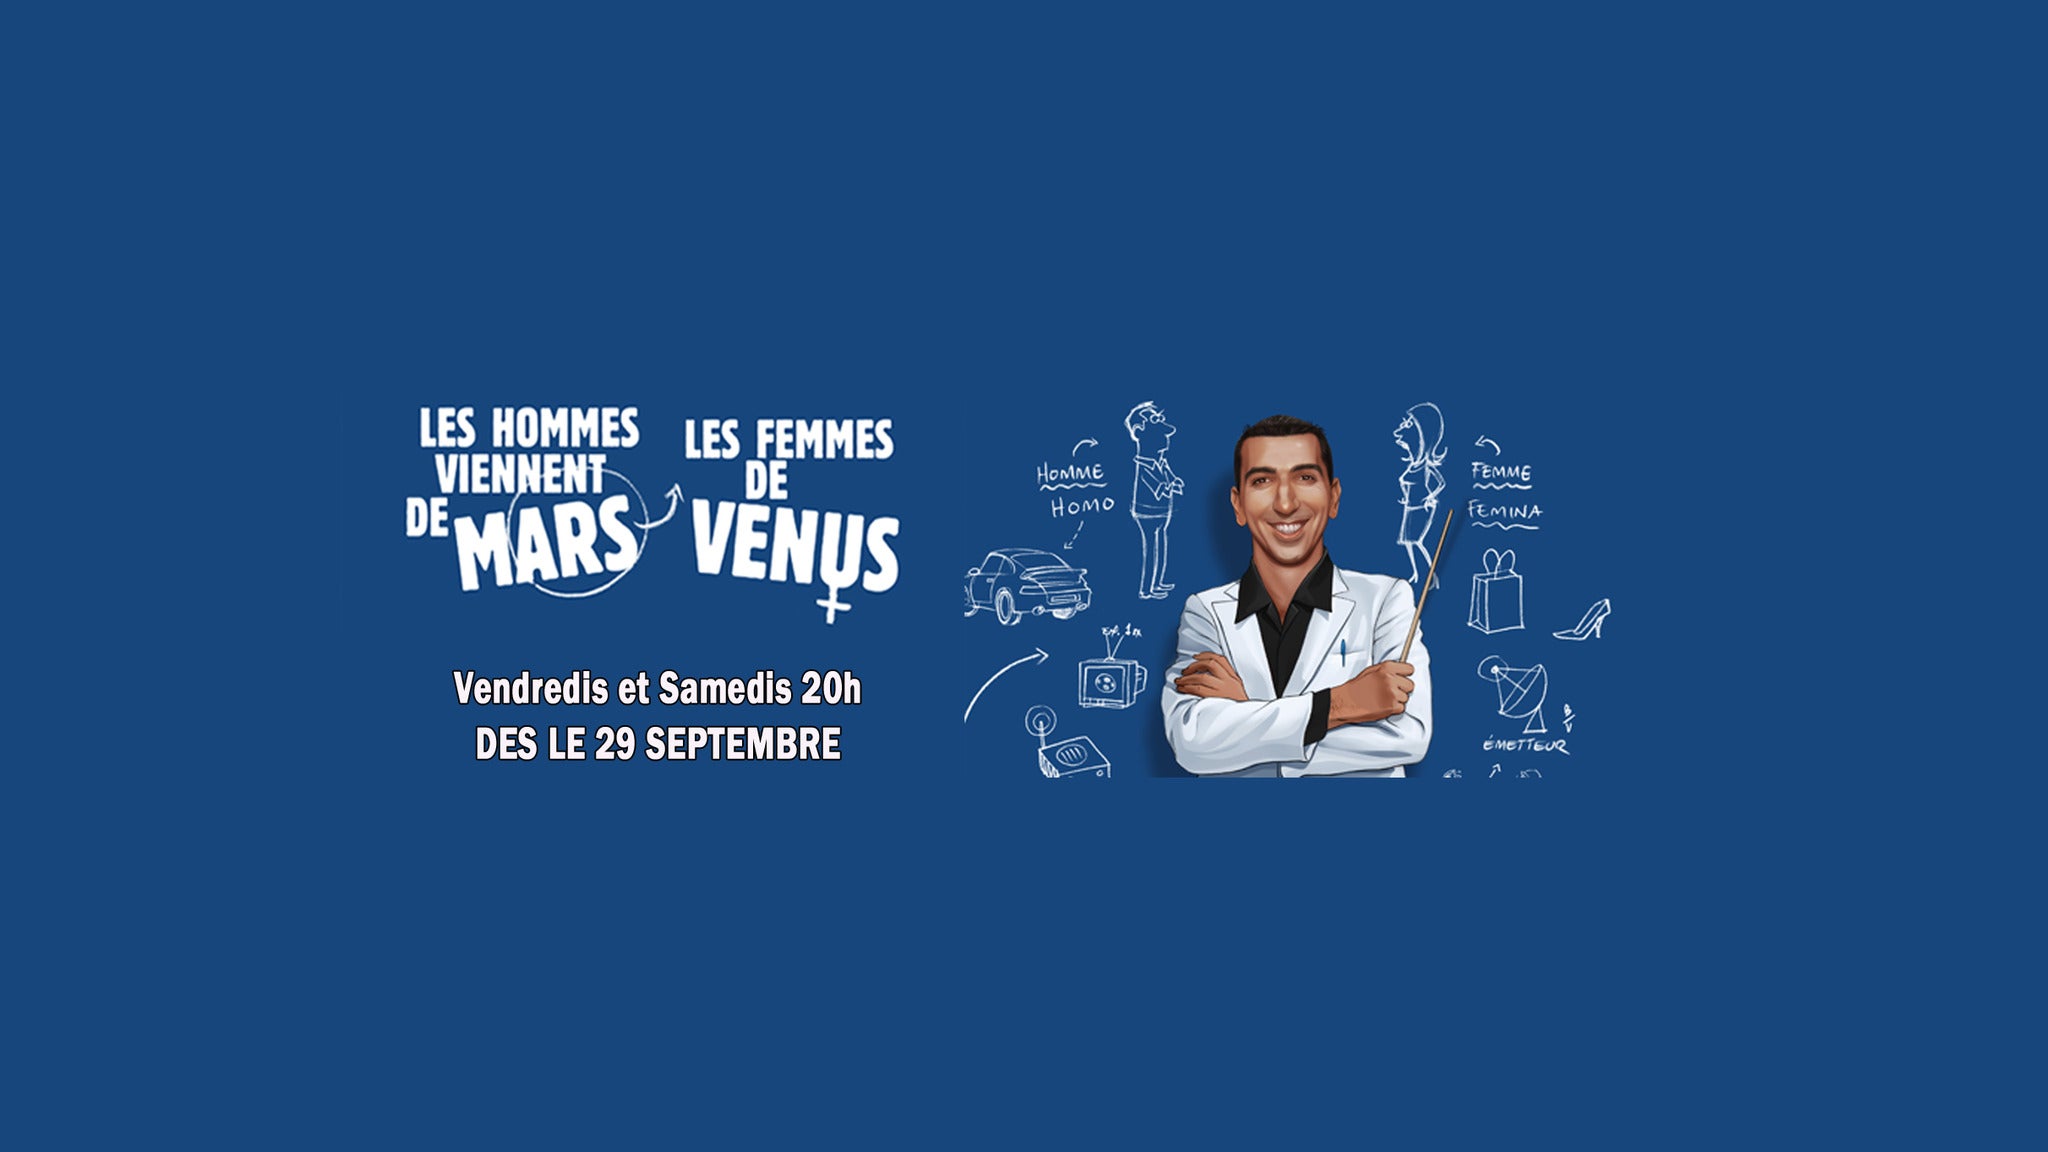 Les Hommes Viennent De Mars Et Les Femmes De Venus presale information on freepresalepasswords.com